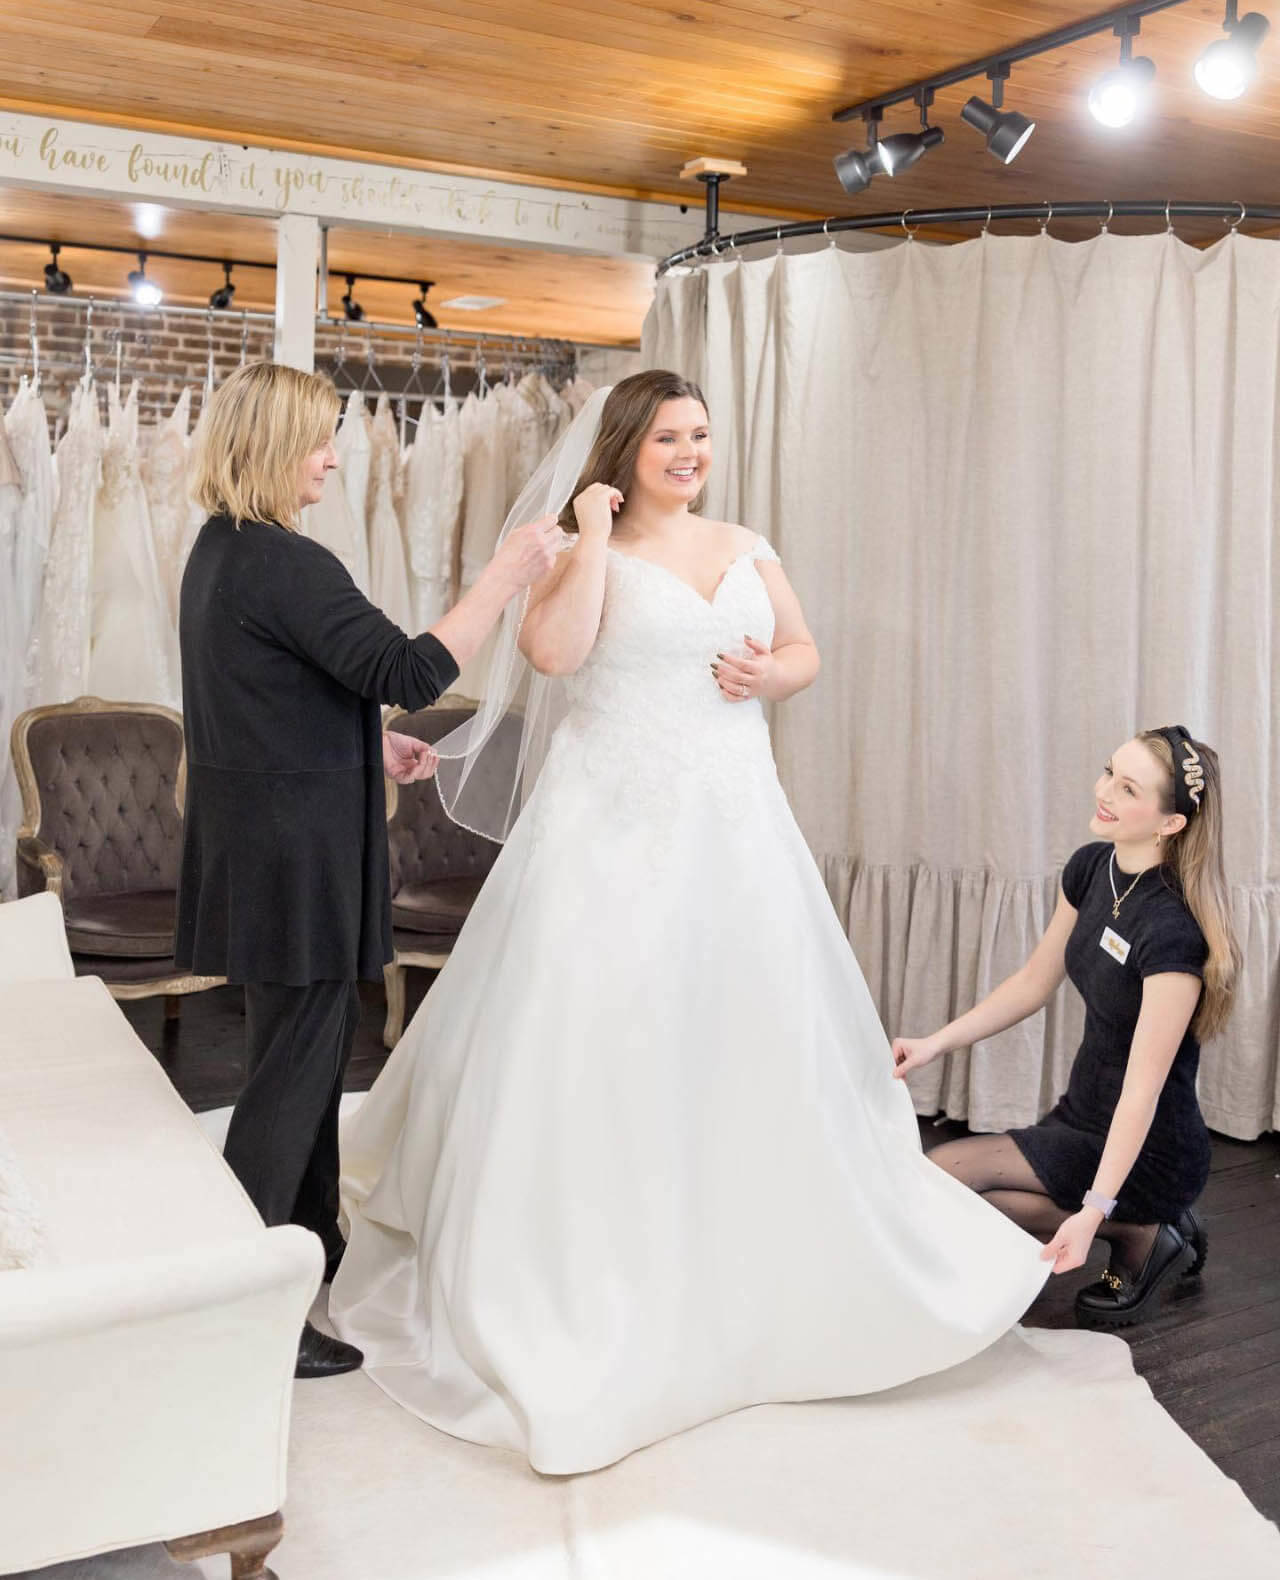 Bridal Buddy – Your Little Secret Bridal & Prom Boutique